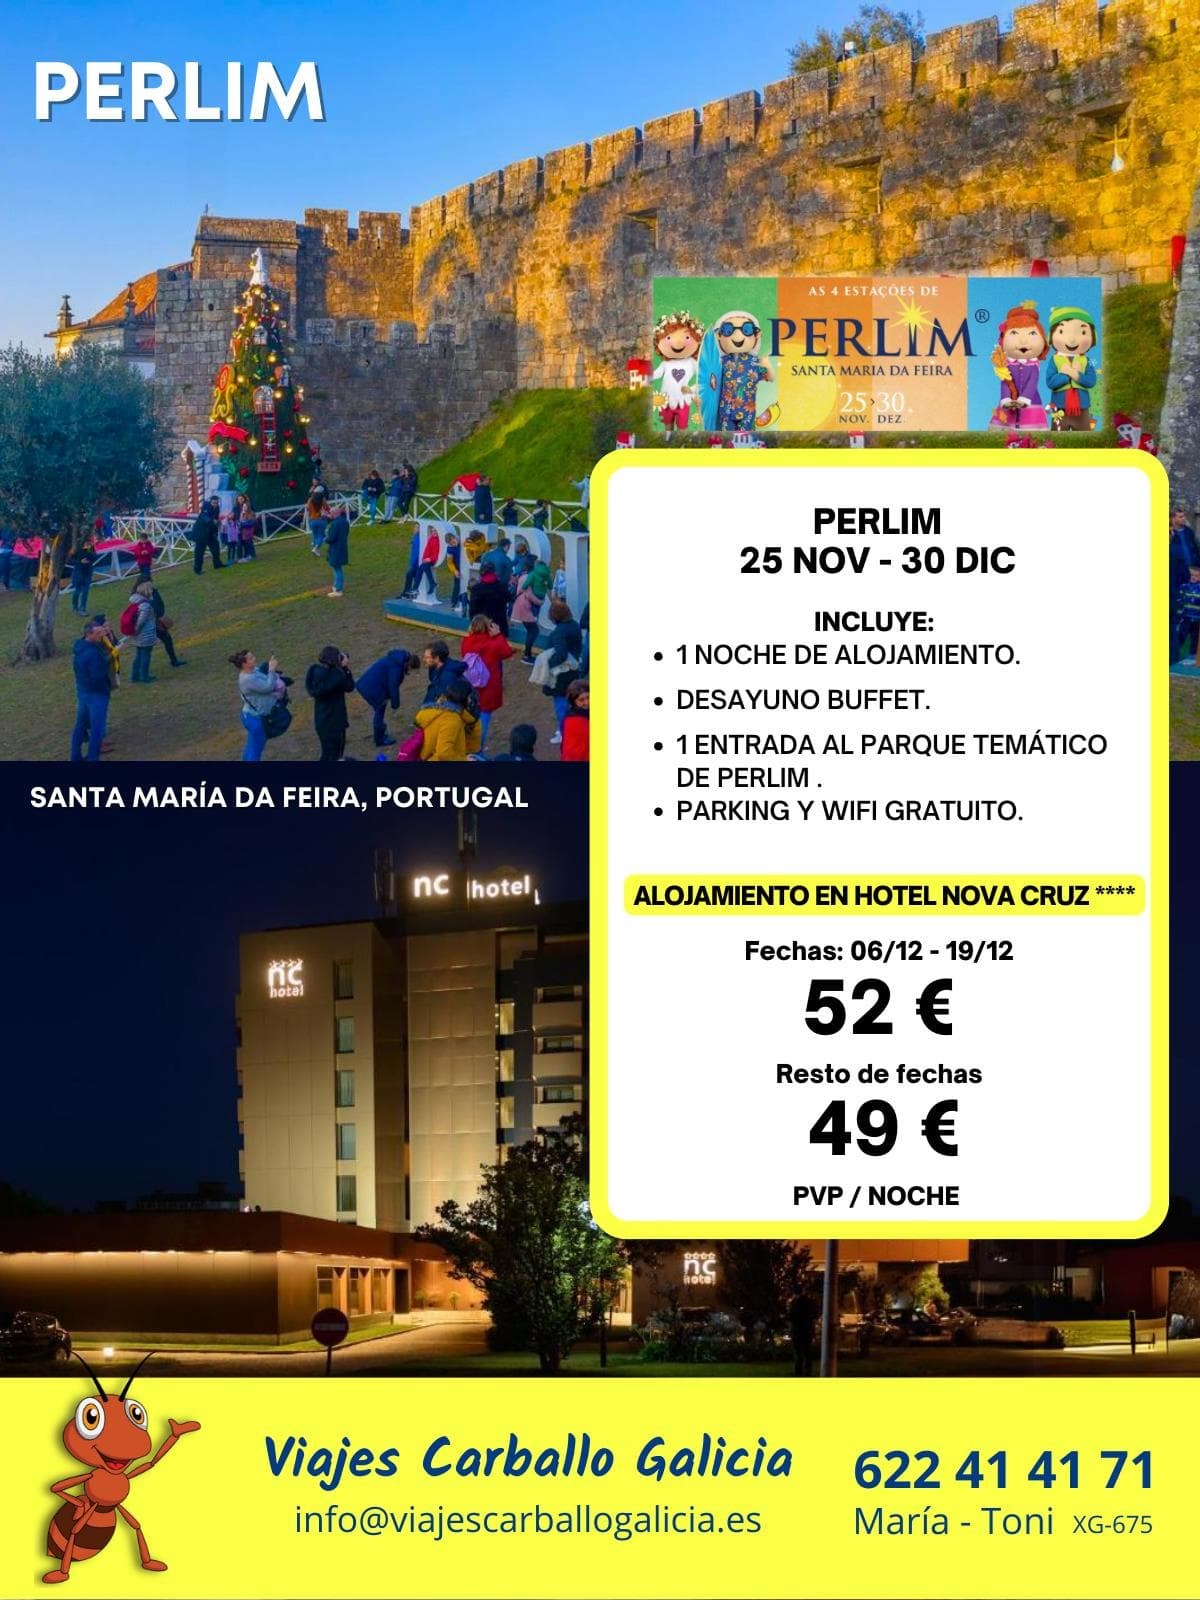 ¡Viajes exclusivos al maravilloso mundo de Perlim! - Imagen 3